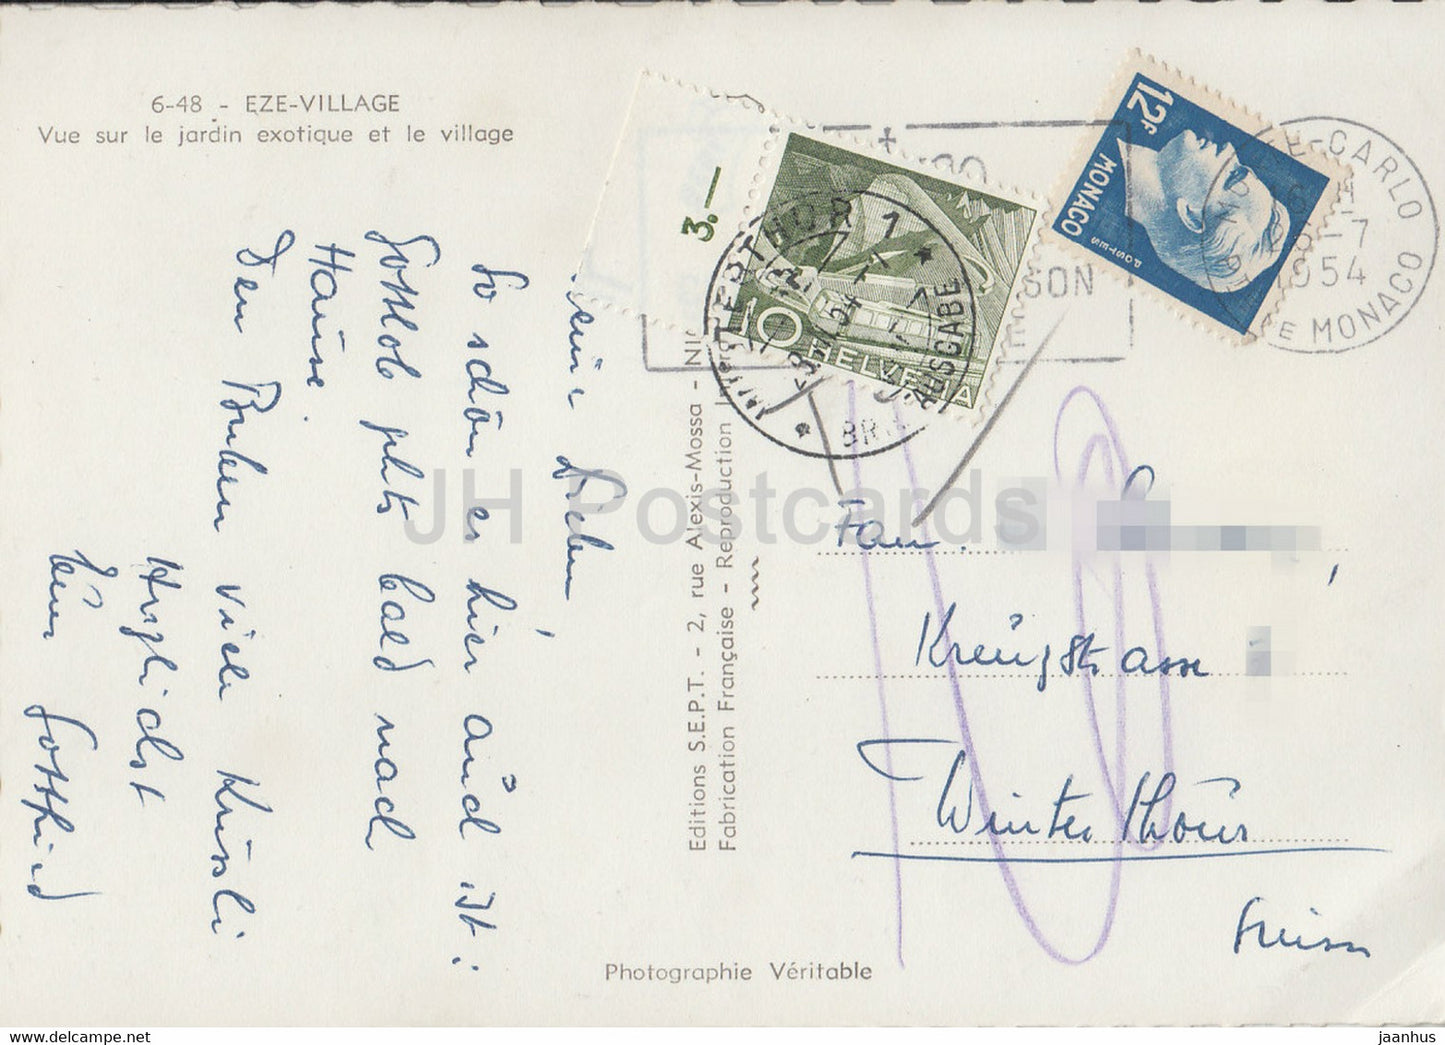 Eze Village - Vue Sur le Jardin exotique et le village - carte postale ancienne - 1954 - France - occasion